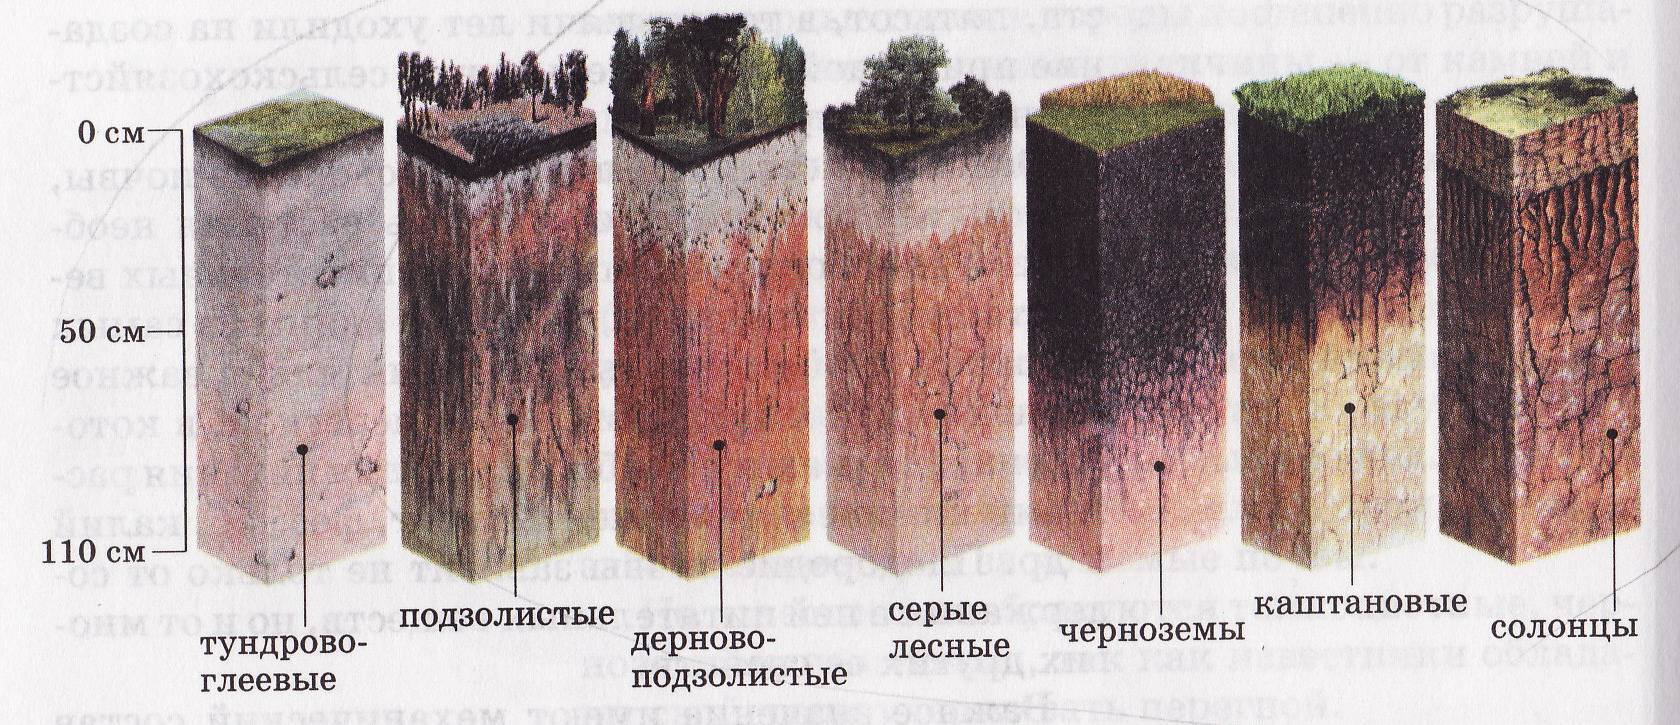 Почвы средней полосы. Дерново-подзолистая, серая Лесная, чернозем почвенные горизонты. Подзолистая почва профиль почвы. Пахотные дерново-подзолистые почвы профиль. Почвенный профиль подзолистых почв.